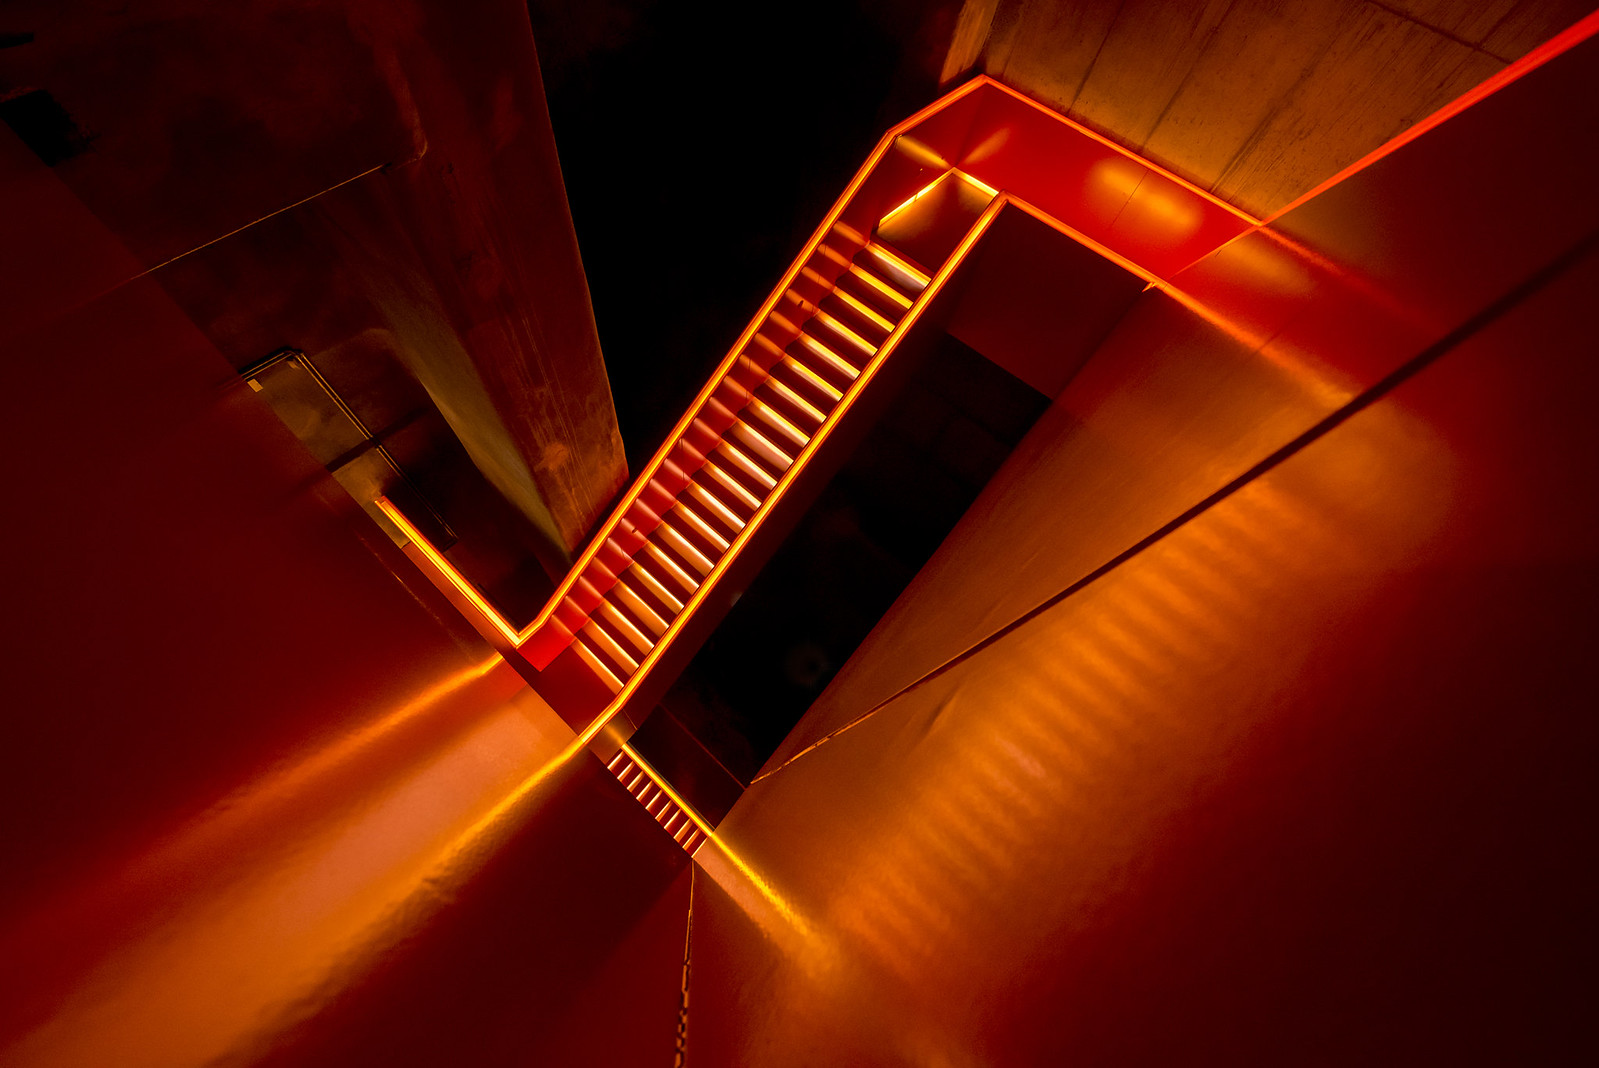 Stairwork orange by Carsten Heyer